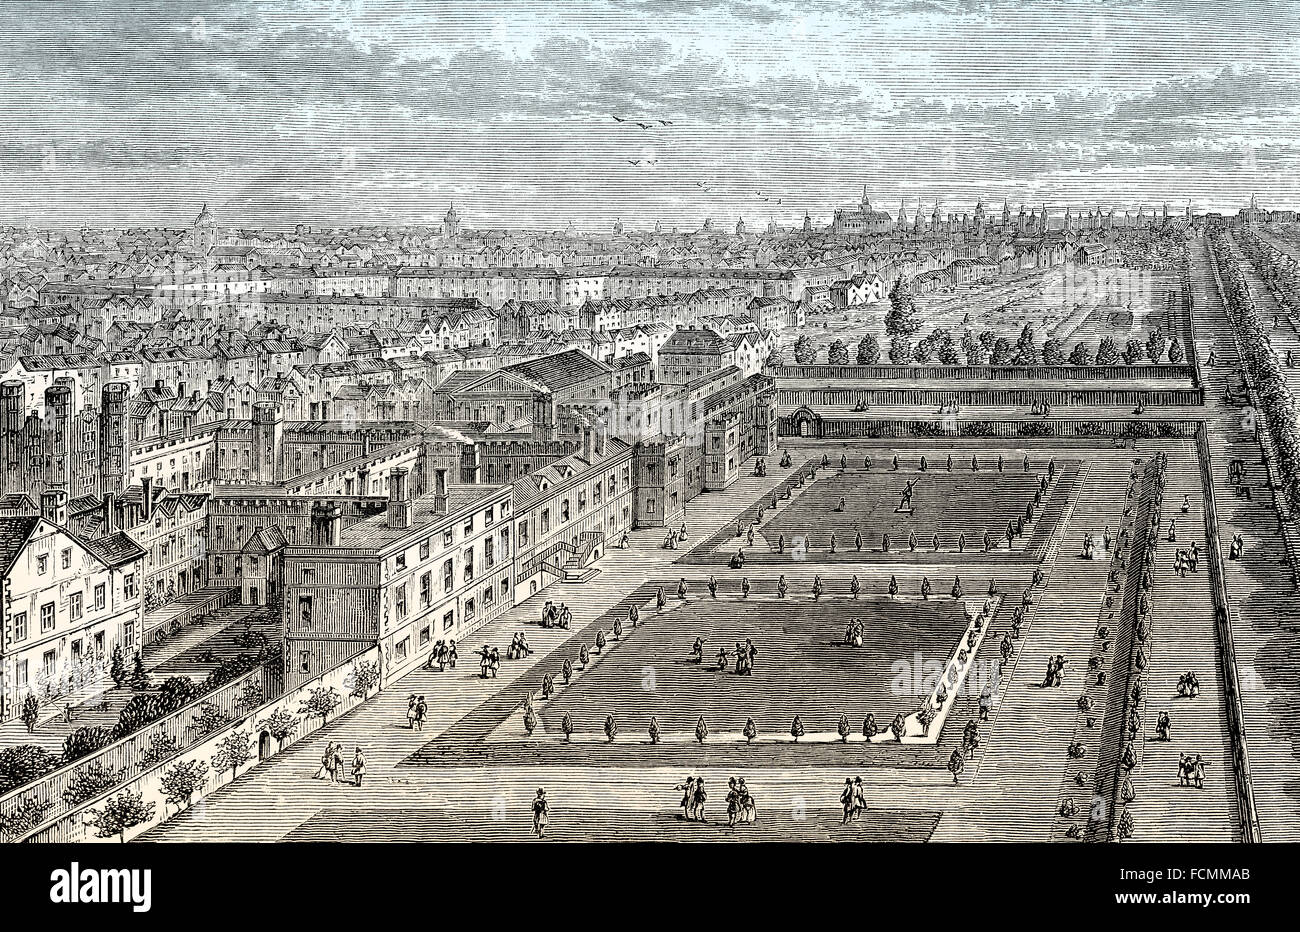 St James's Palace, à gauche, et le Mall, 1715, Londres, Angleterre Banque D'Images